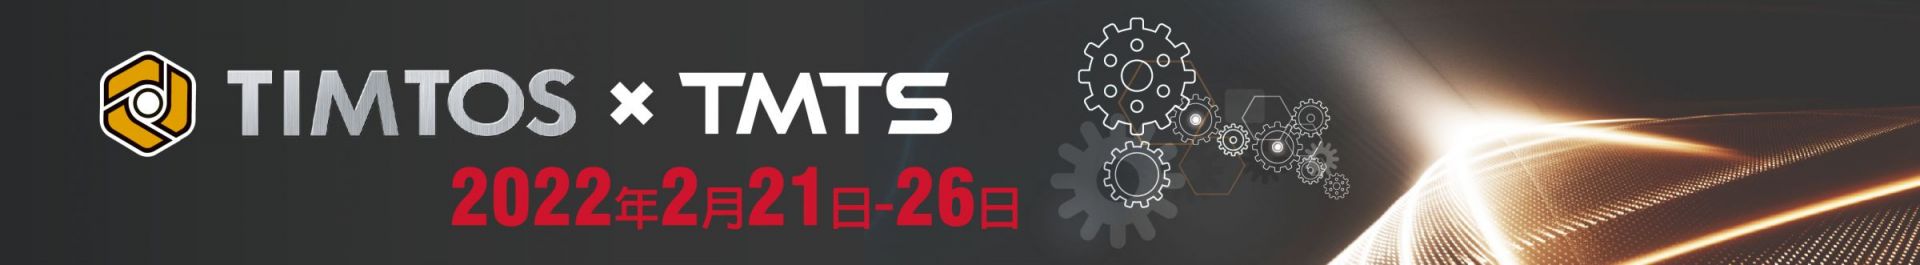 TIMTOS x TMTS 2022 Triển lãm máy công cụ quốc tế tại Đài Bắc